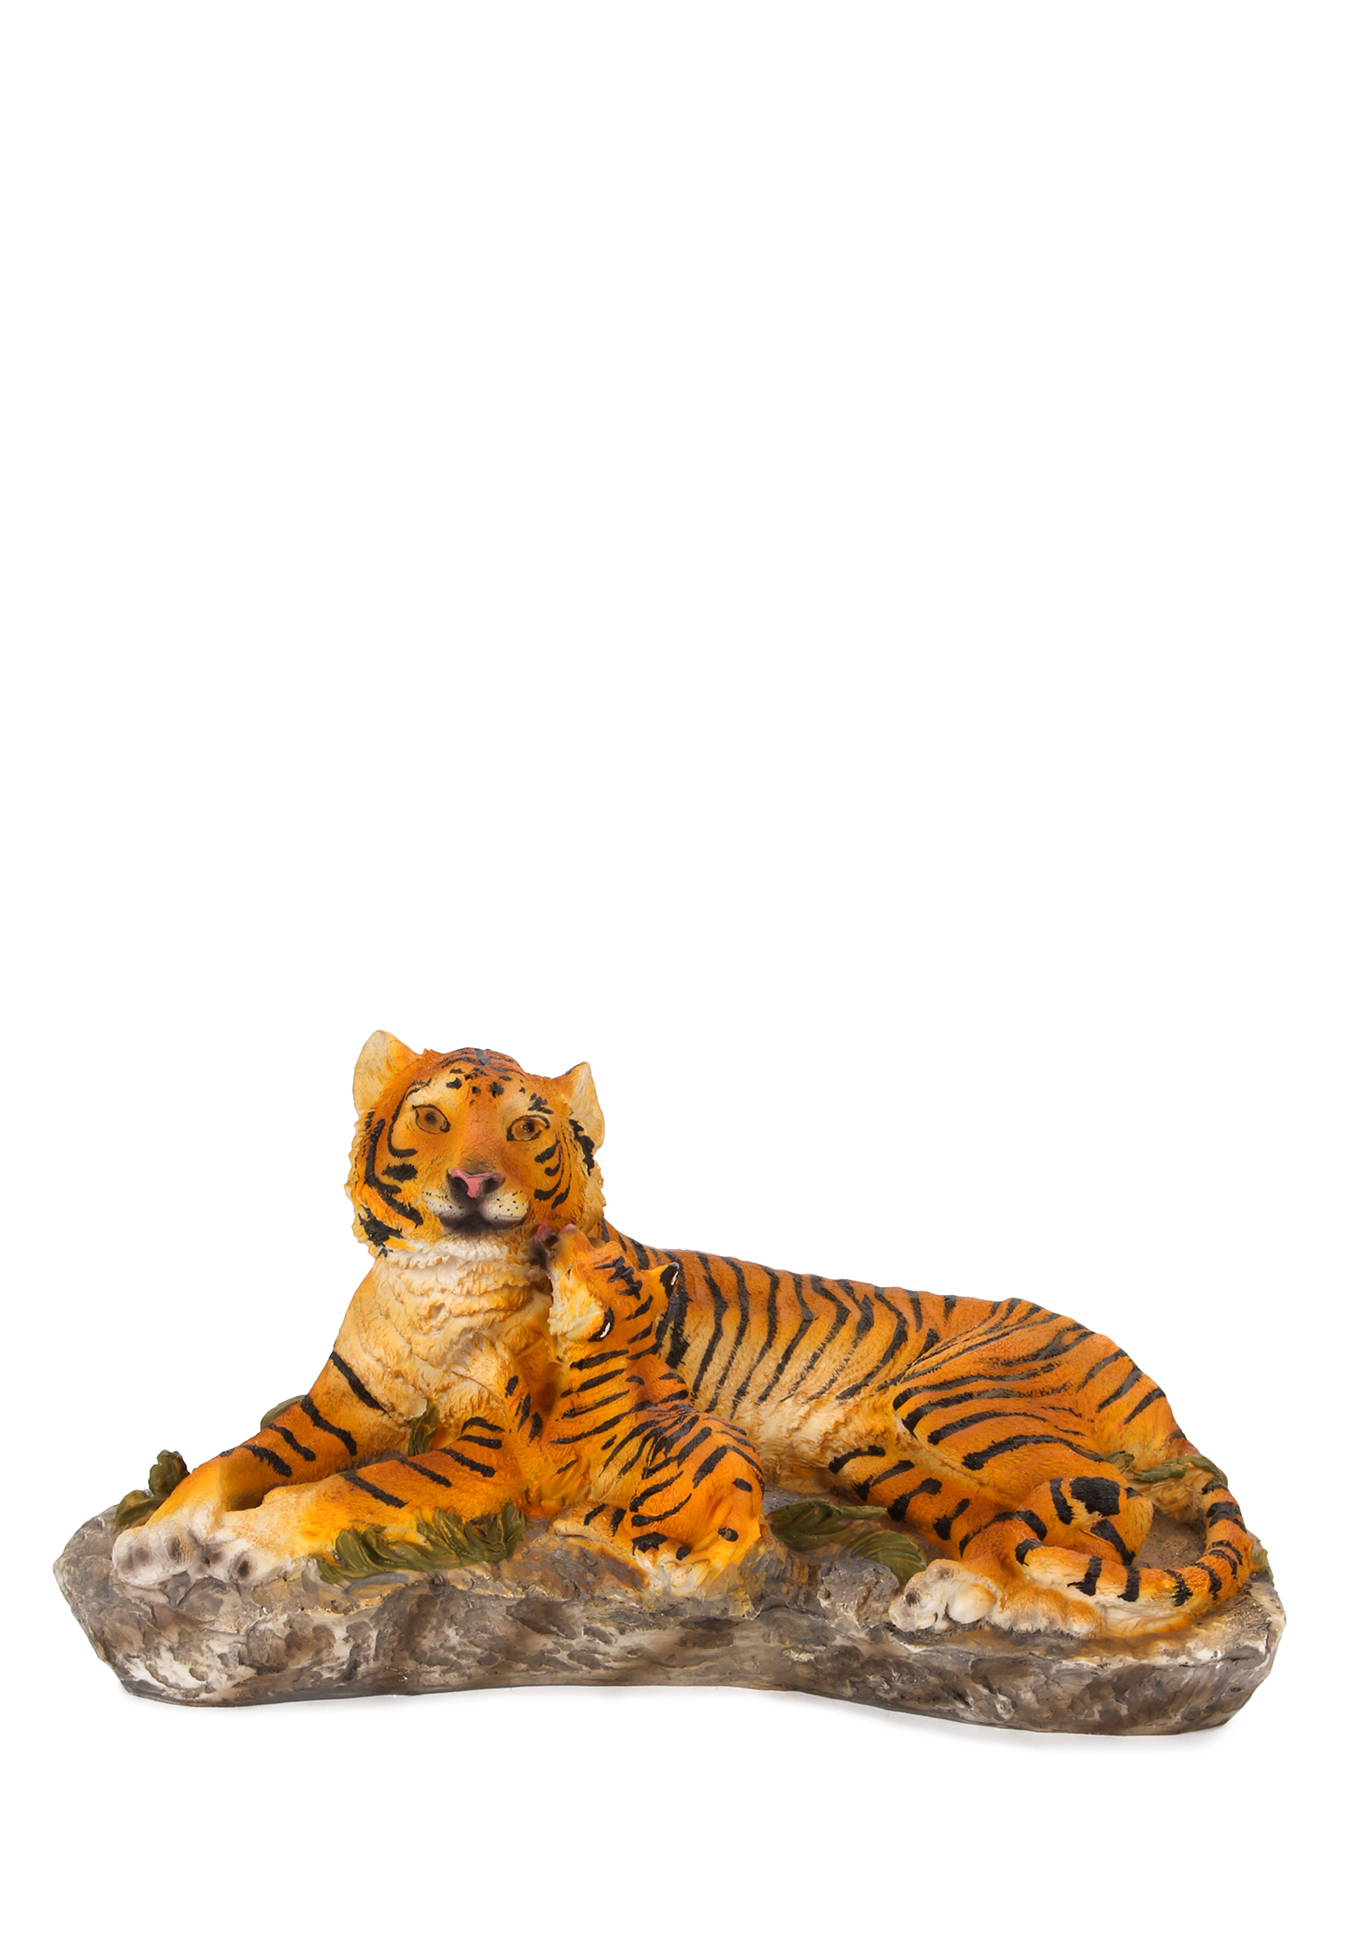 Оберег интерьерный "Тигр" Lefard, цвет стойка бенгальского тигра, размер 20,5*7*15 см - фото 10